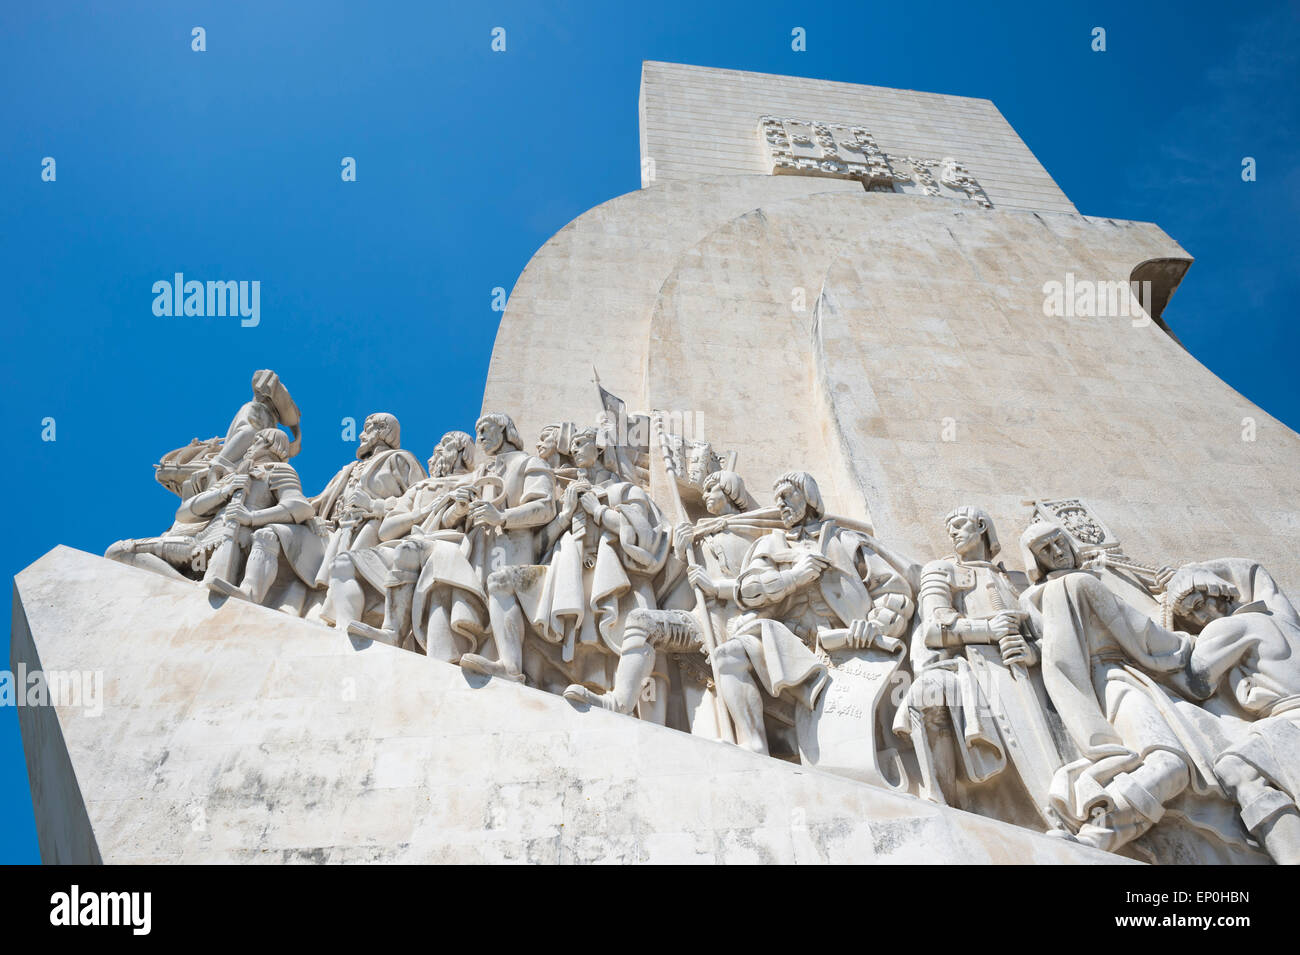 Padrao dos Descobrimentos, memorial marinera, edad del descubrimiento, Belem sobre el río Tajo, Lisboa, Portugal Foto de stock